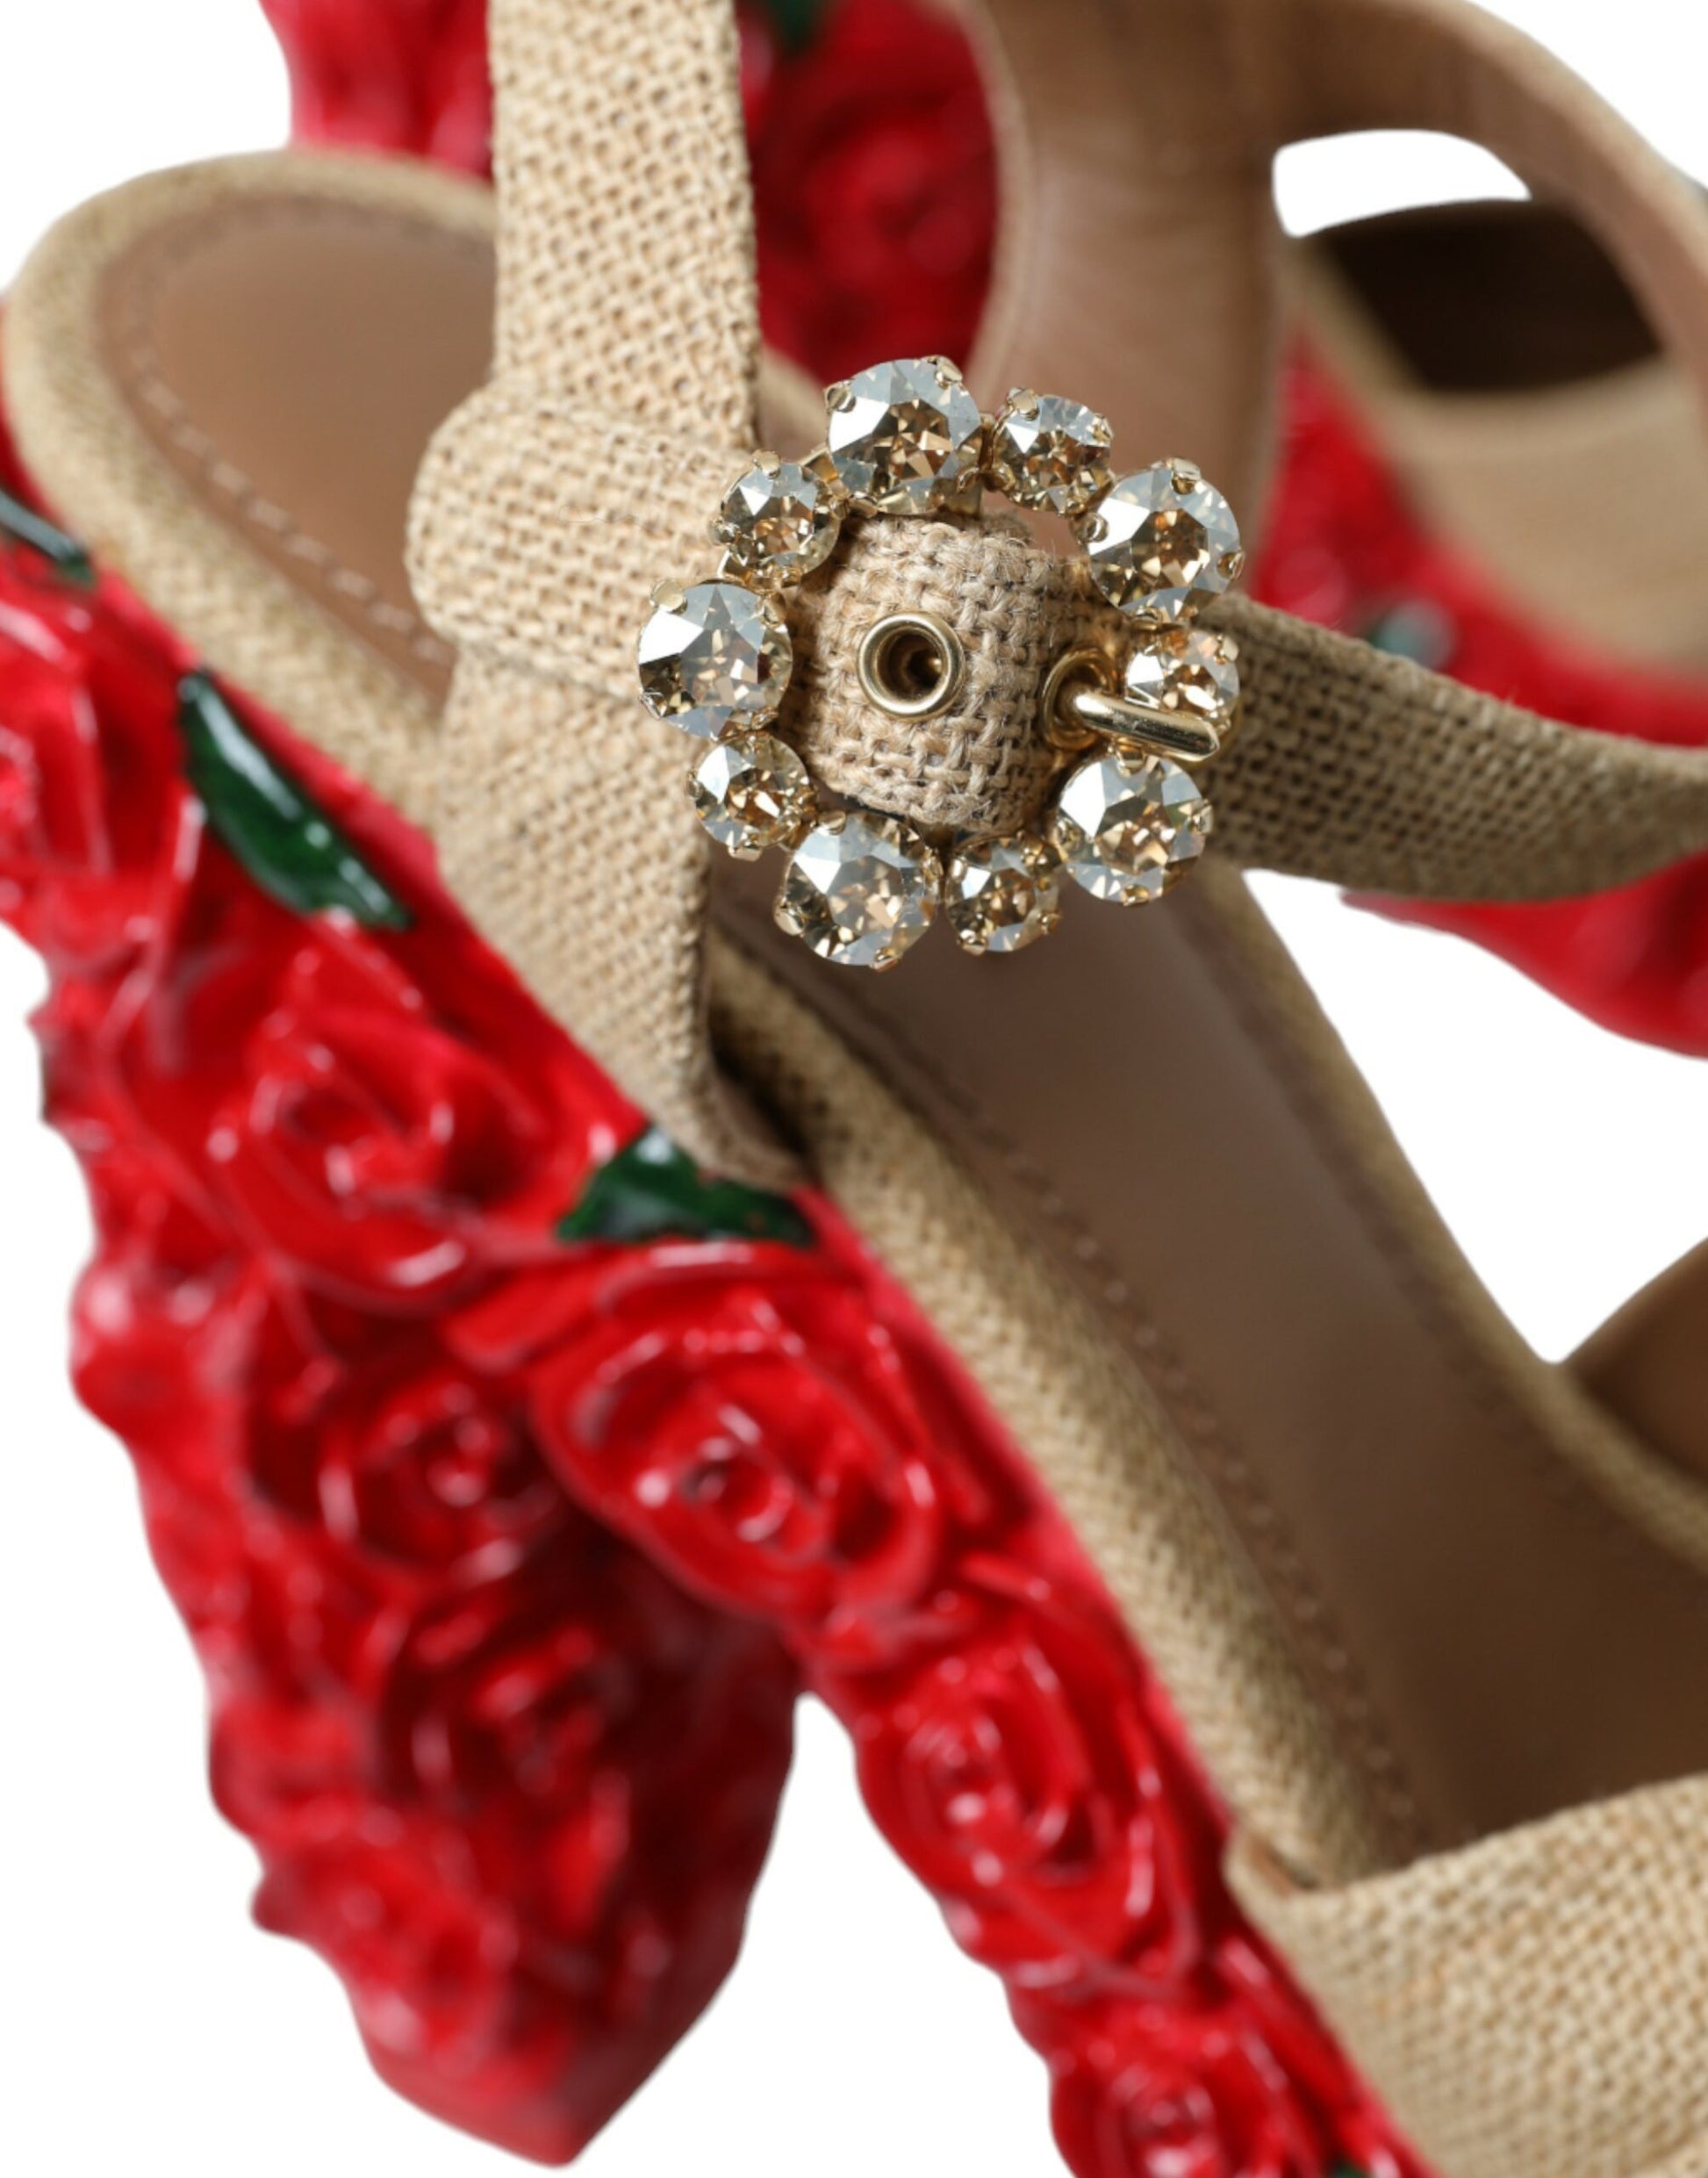 Dolce & Gabbana Red Roses Crystal Platform Sandals Shoes